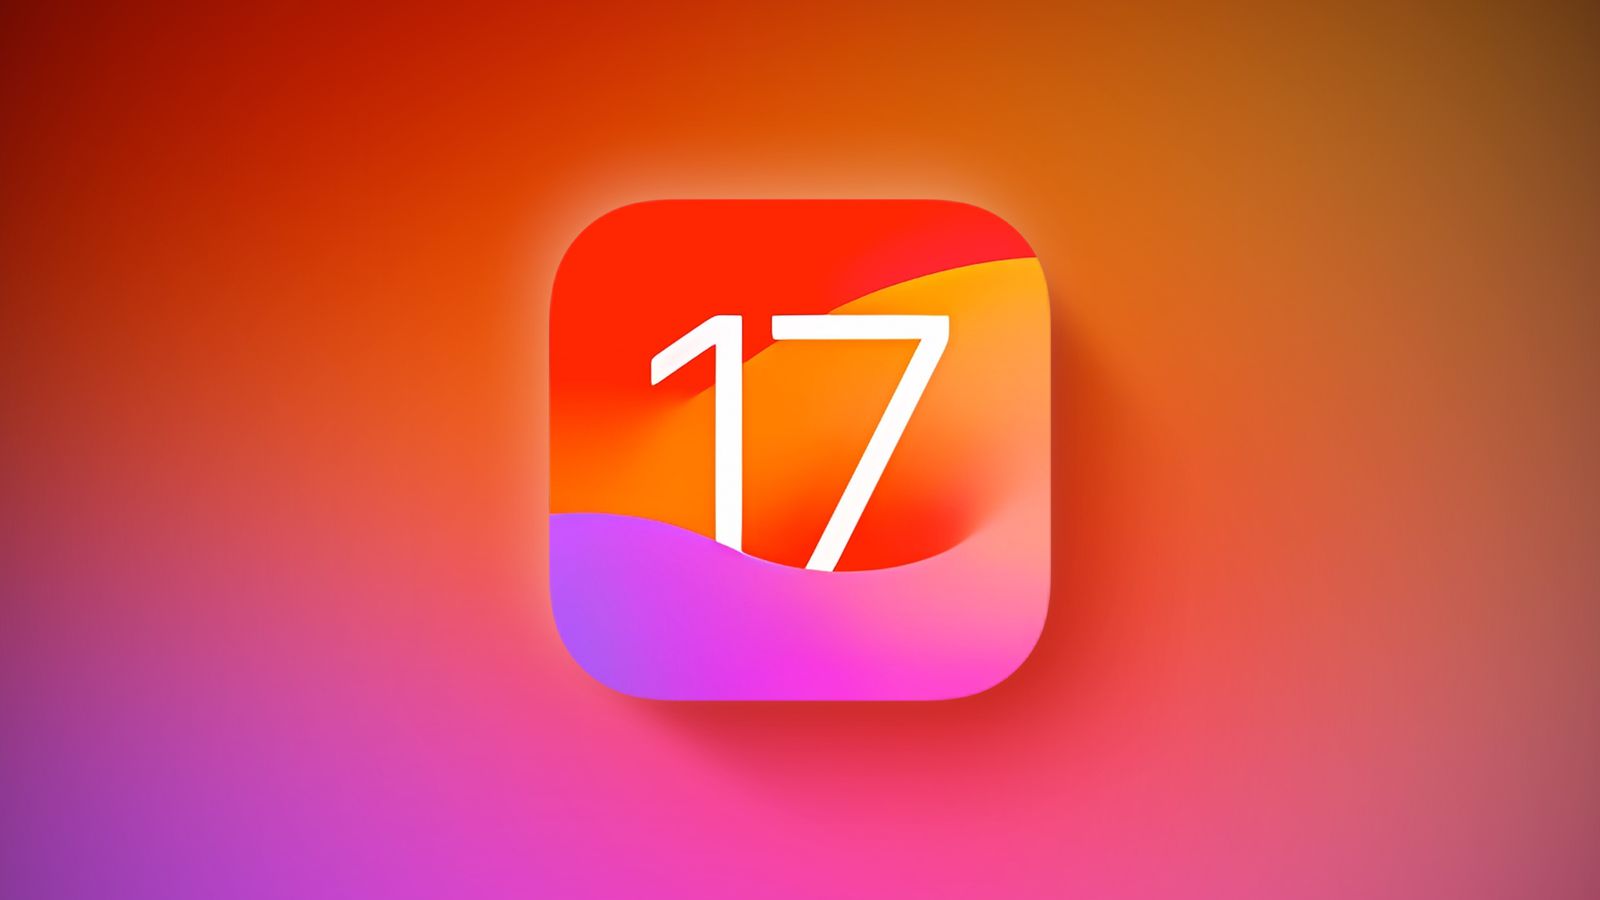 Вышла iOS 17 beta 6 для разработчиков